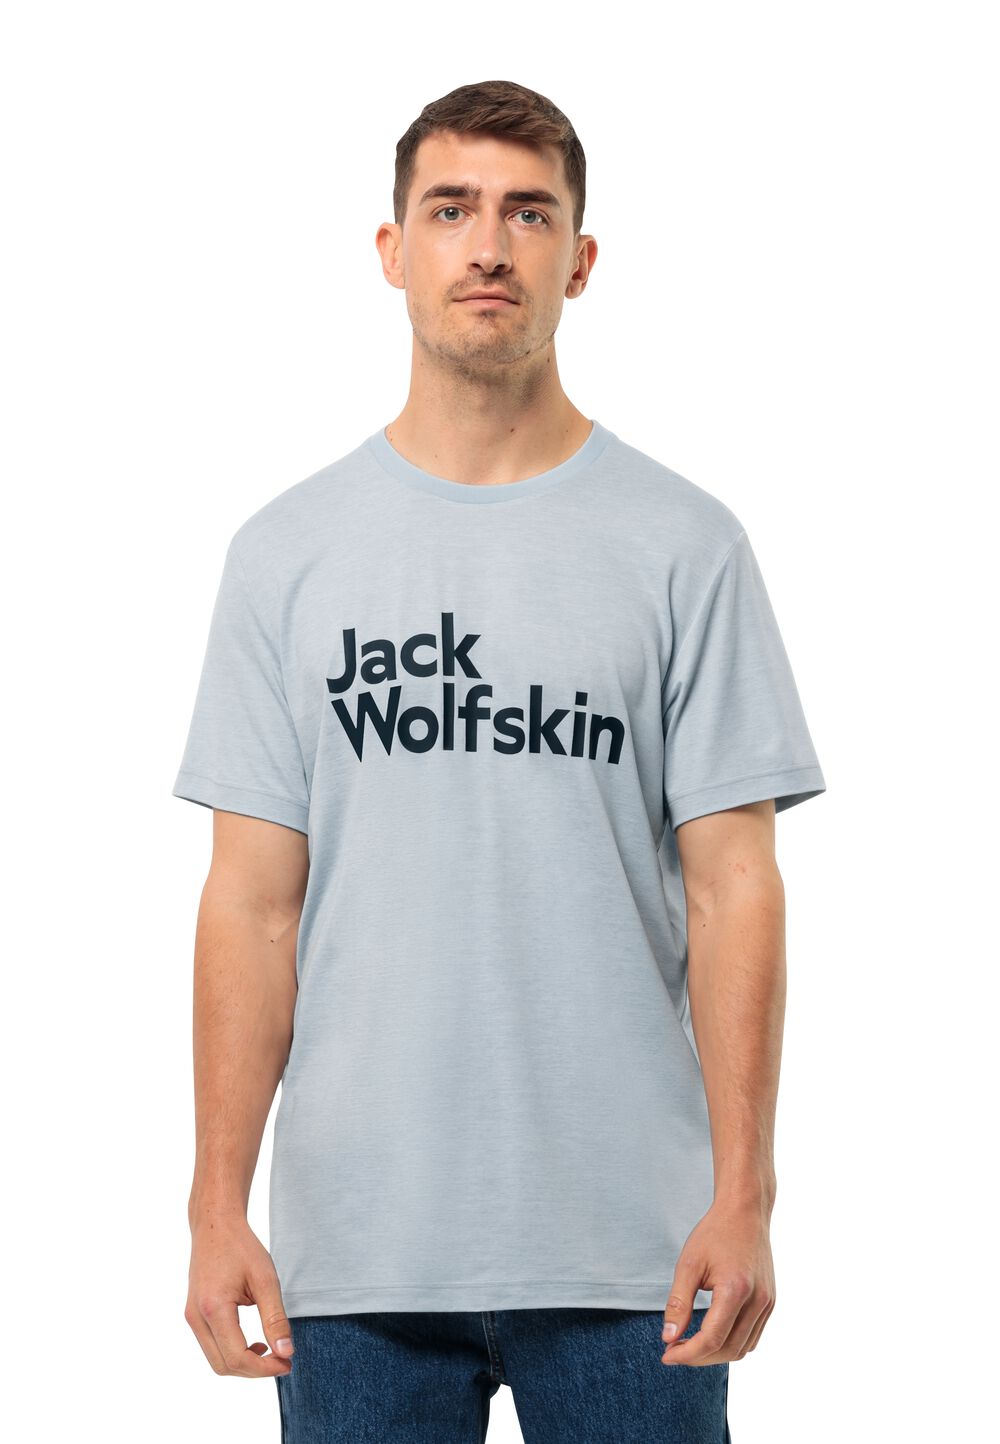 Jack Wolfskin Funktionsshirt Herren Brand T-Shirt Men S soft blue soft blue von Jack Wolfskin